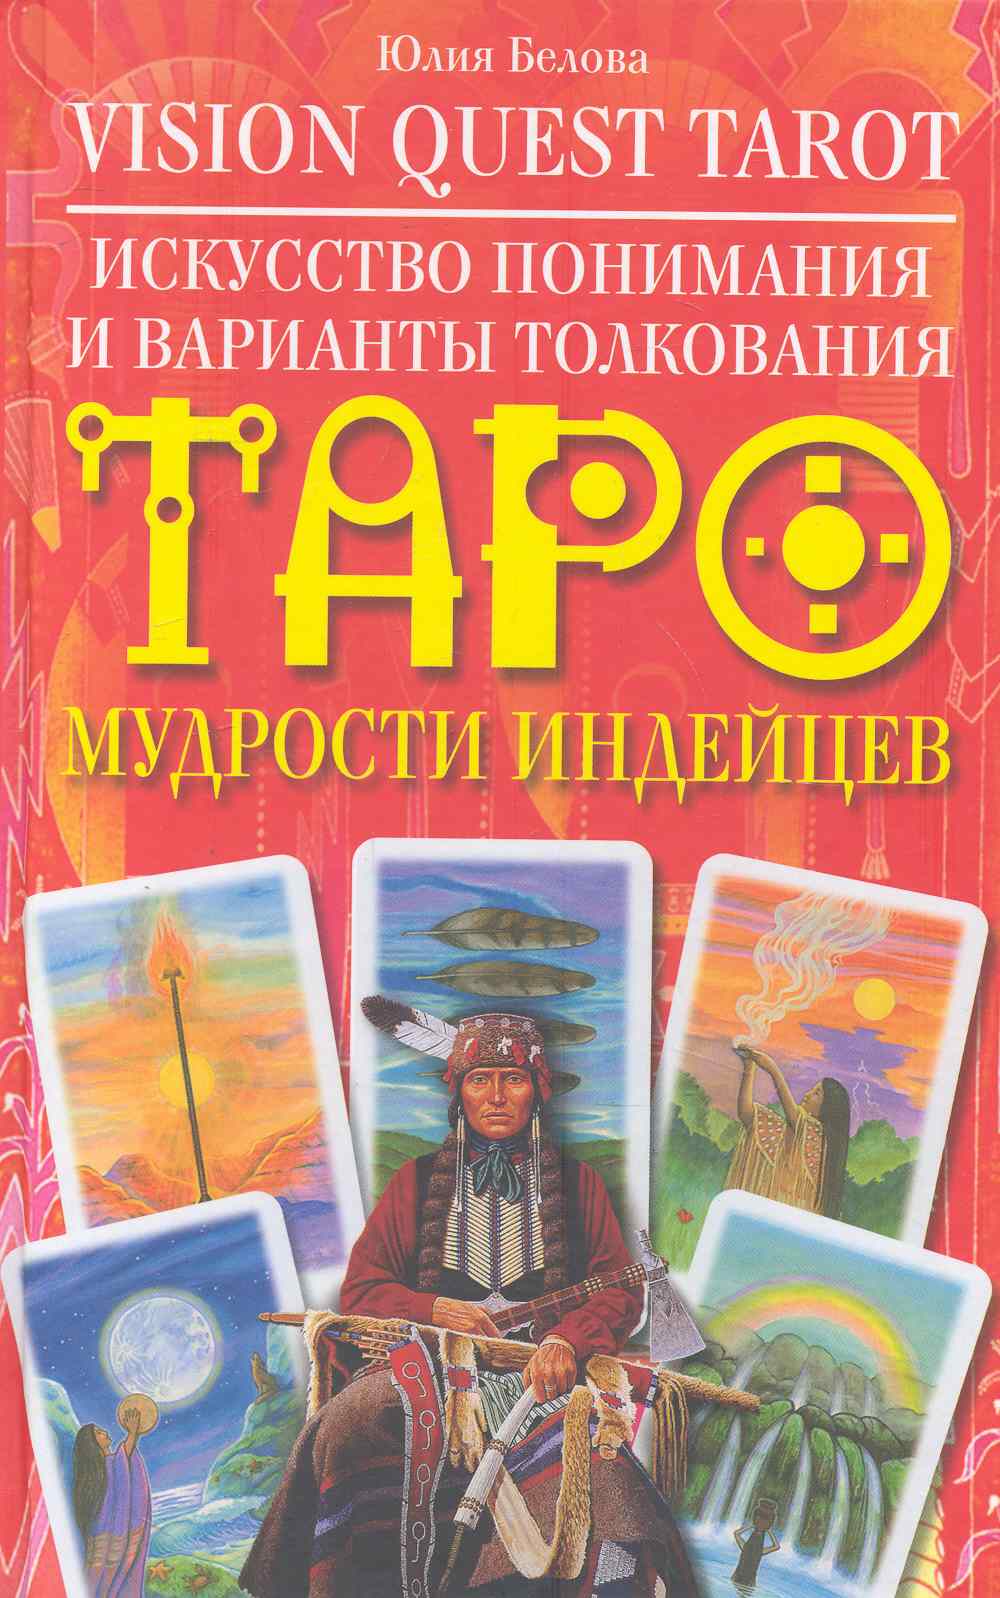 Белова Юлия Валерьевна - Vision Quest Tarot. Искусство понимания и варианты толкования Таро мудрости индейцев